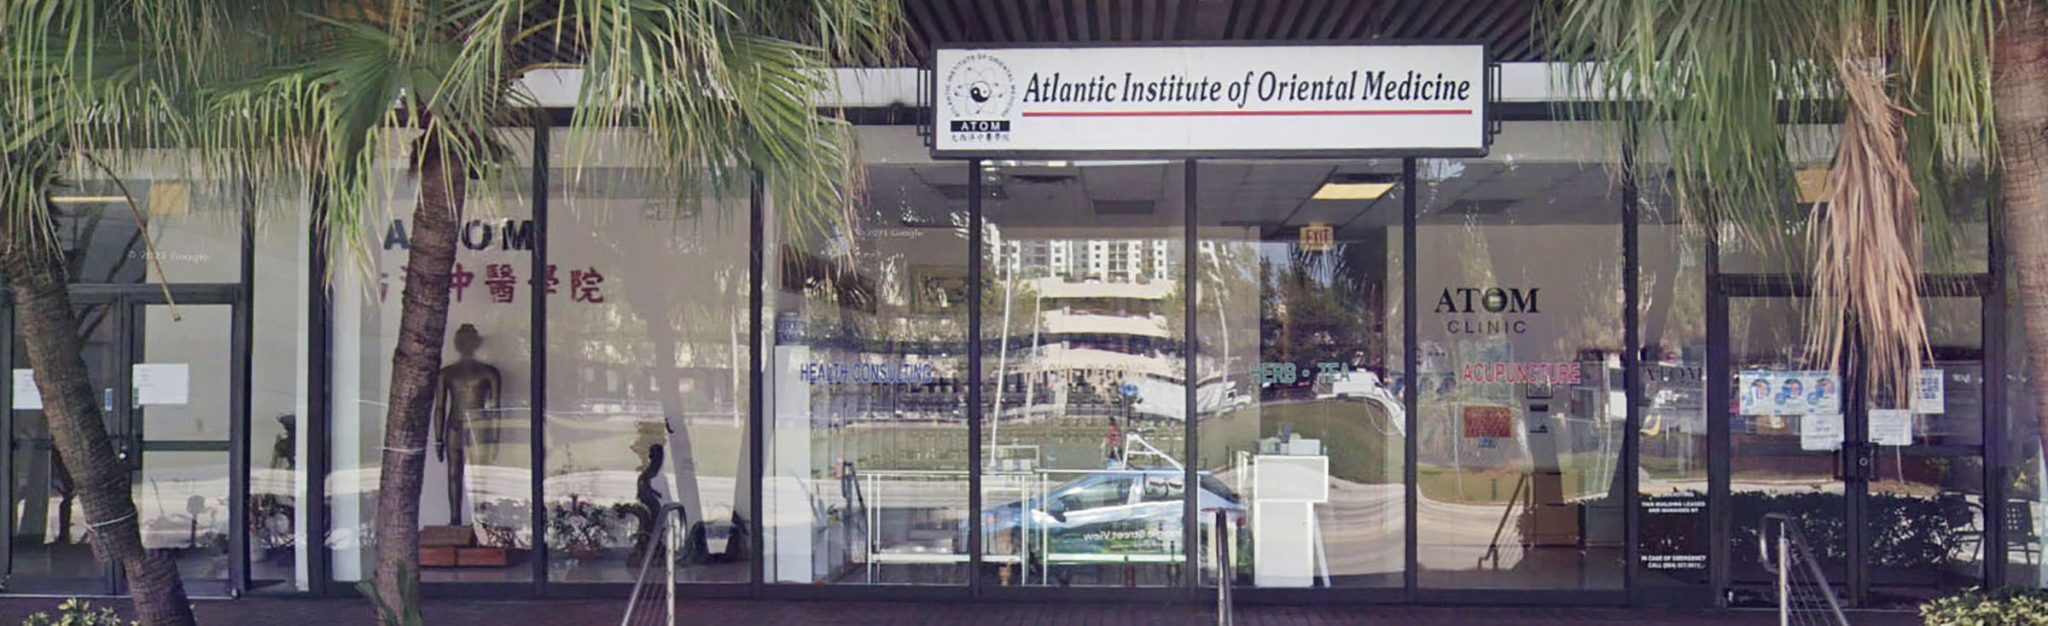 Front of building of Atlantic Institute of Oriental Medicine